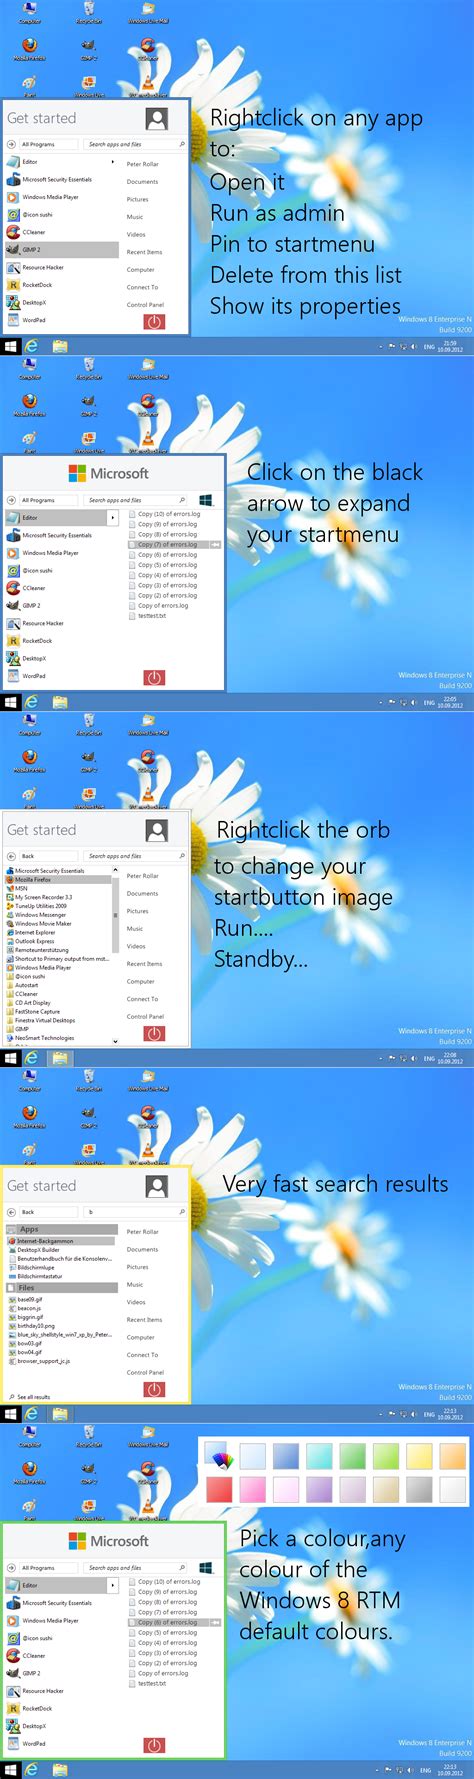 Скачать Скин для программы Vistart в стиле Windows 8 Os Styleru